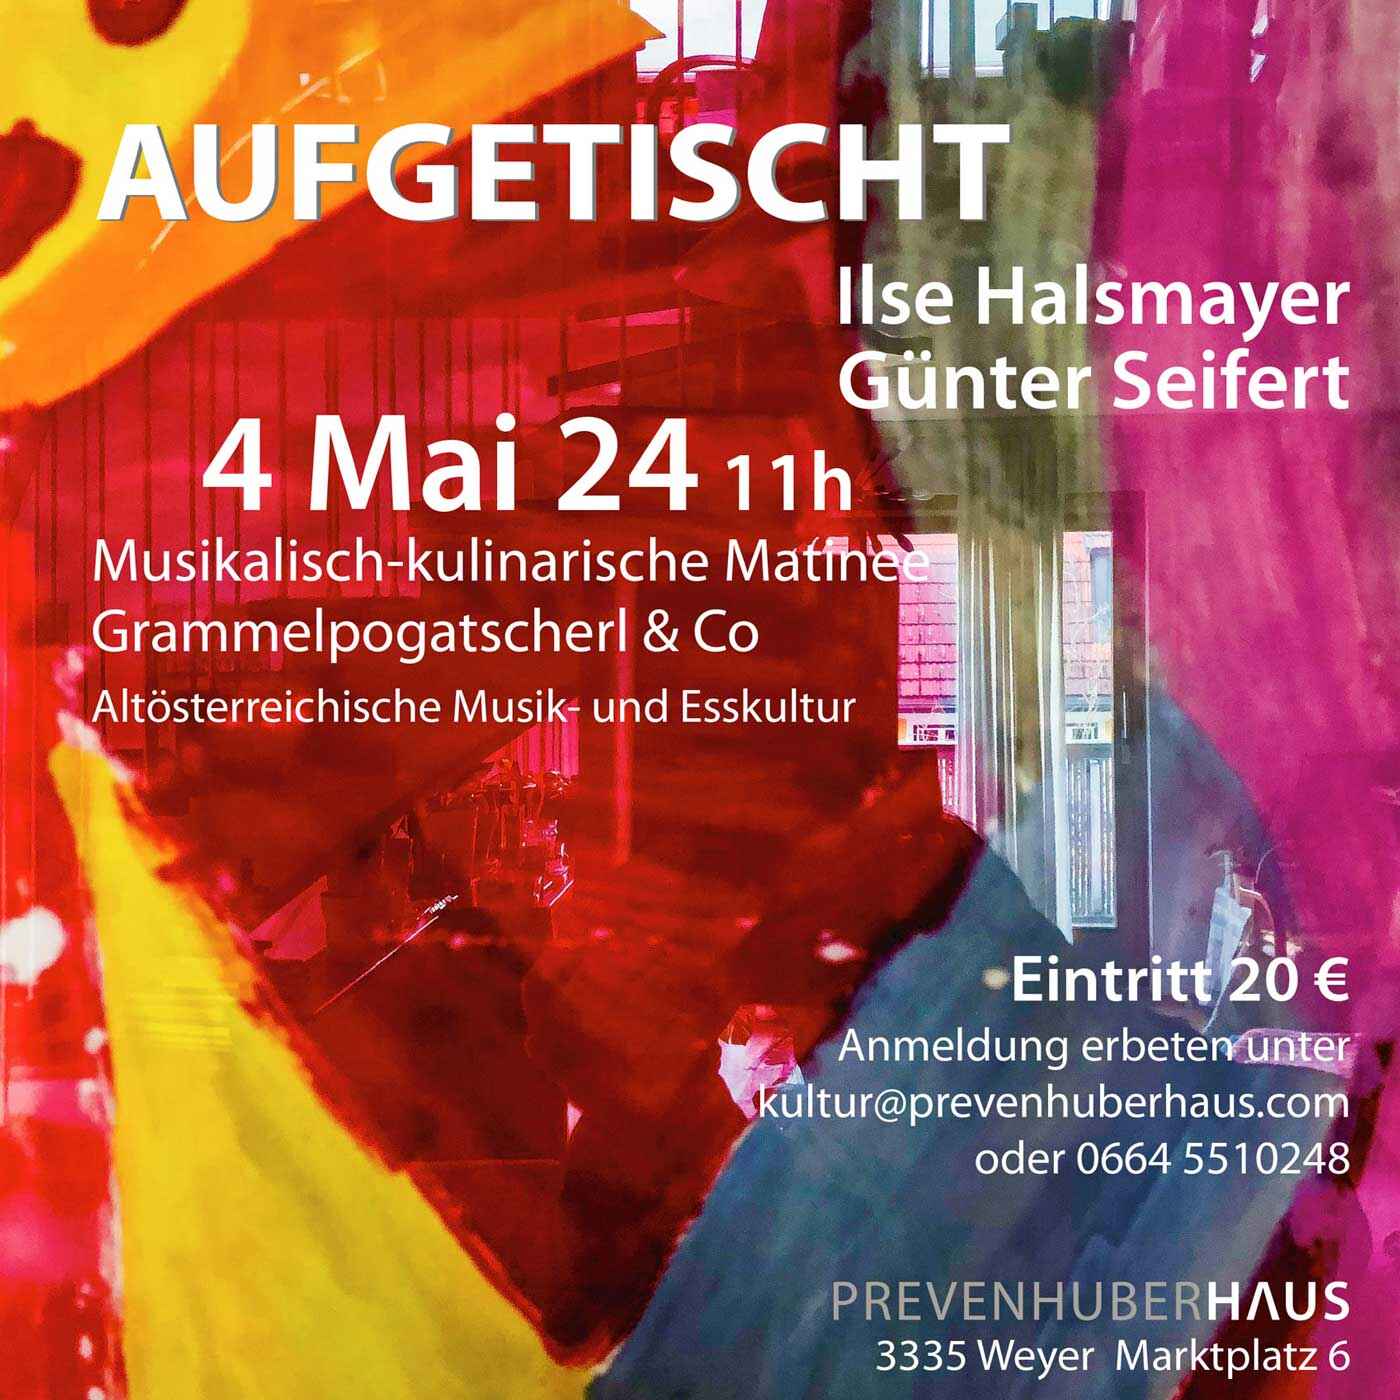 AUFGETISCHT | musikalisch-kulinarische Matinee mit Grammelpogatscherl & Co, 4. Mai 2024, 11 Uhr